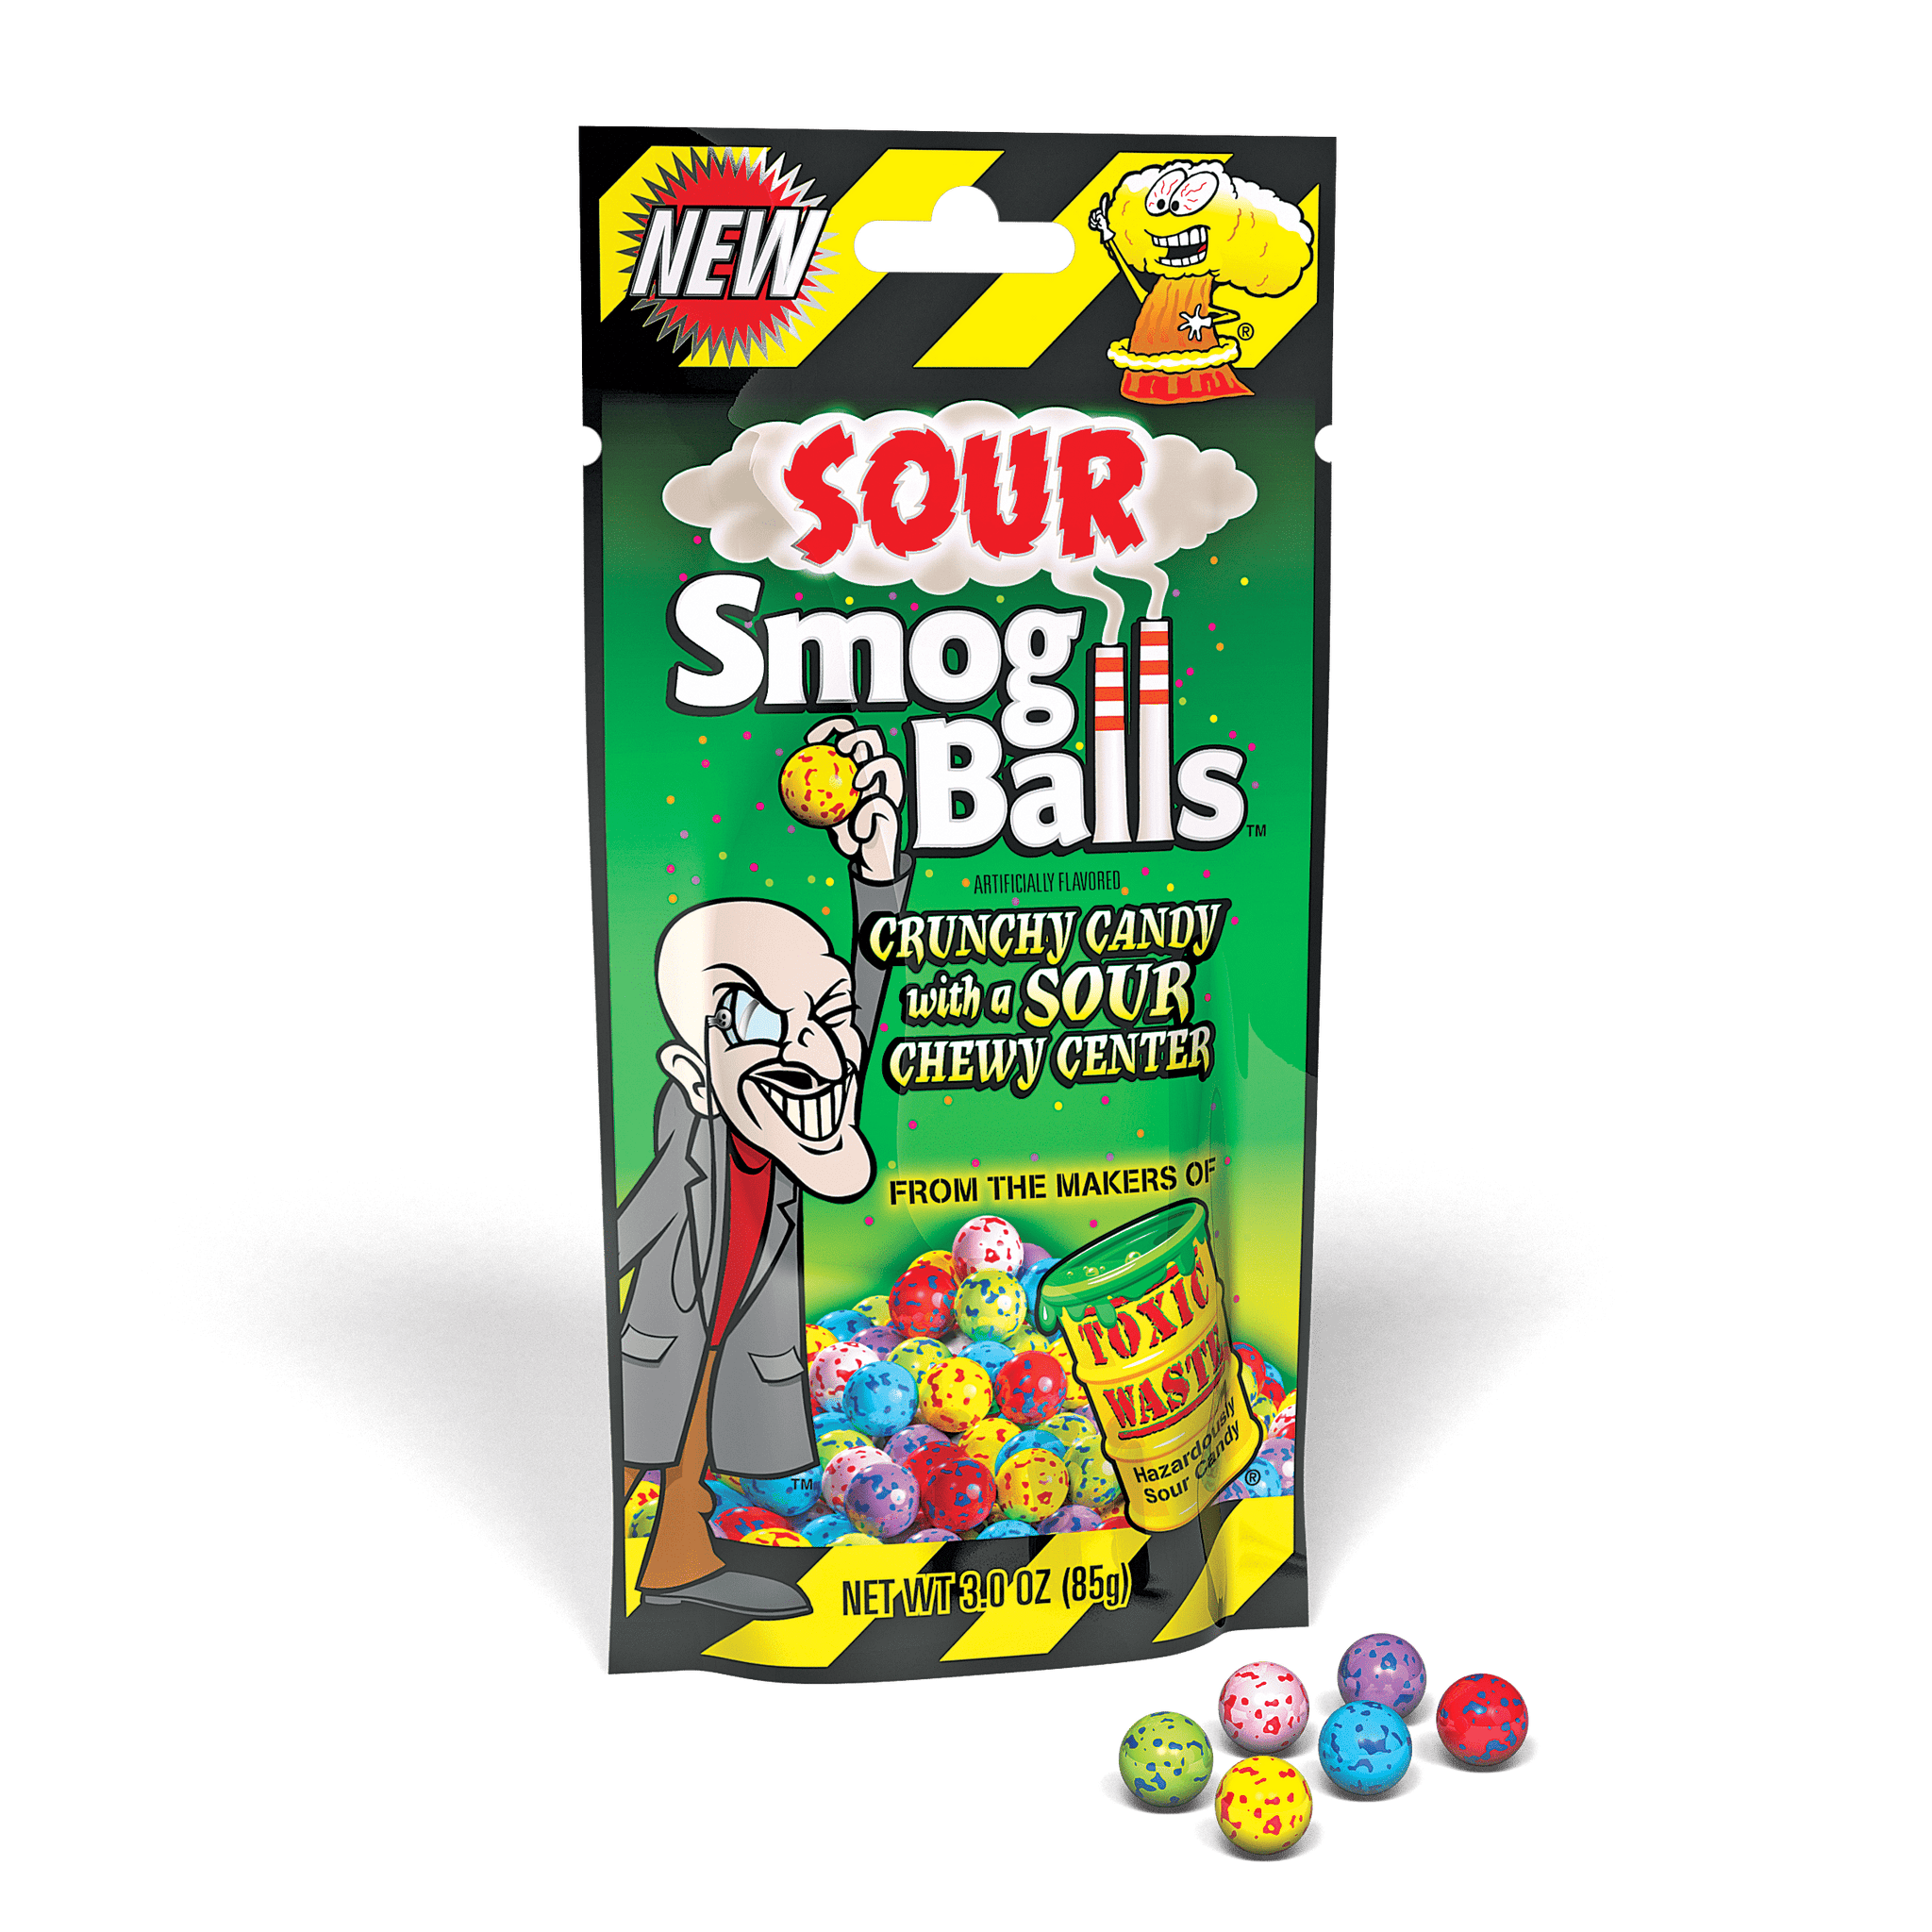 Bulk Toxic Waste Hazardous Sour Candy